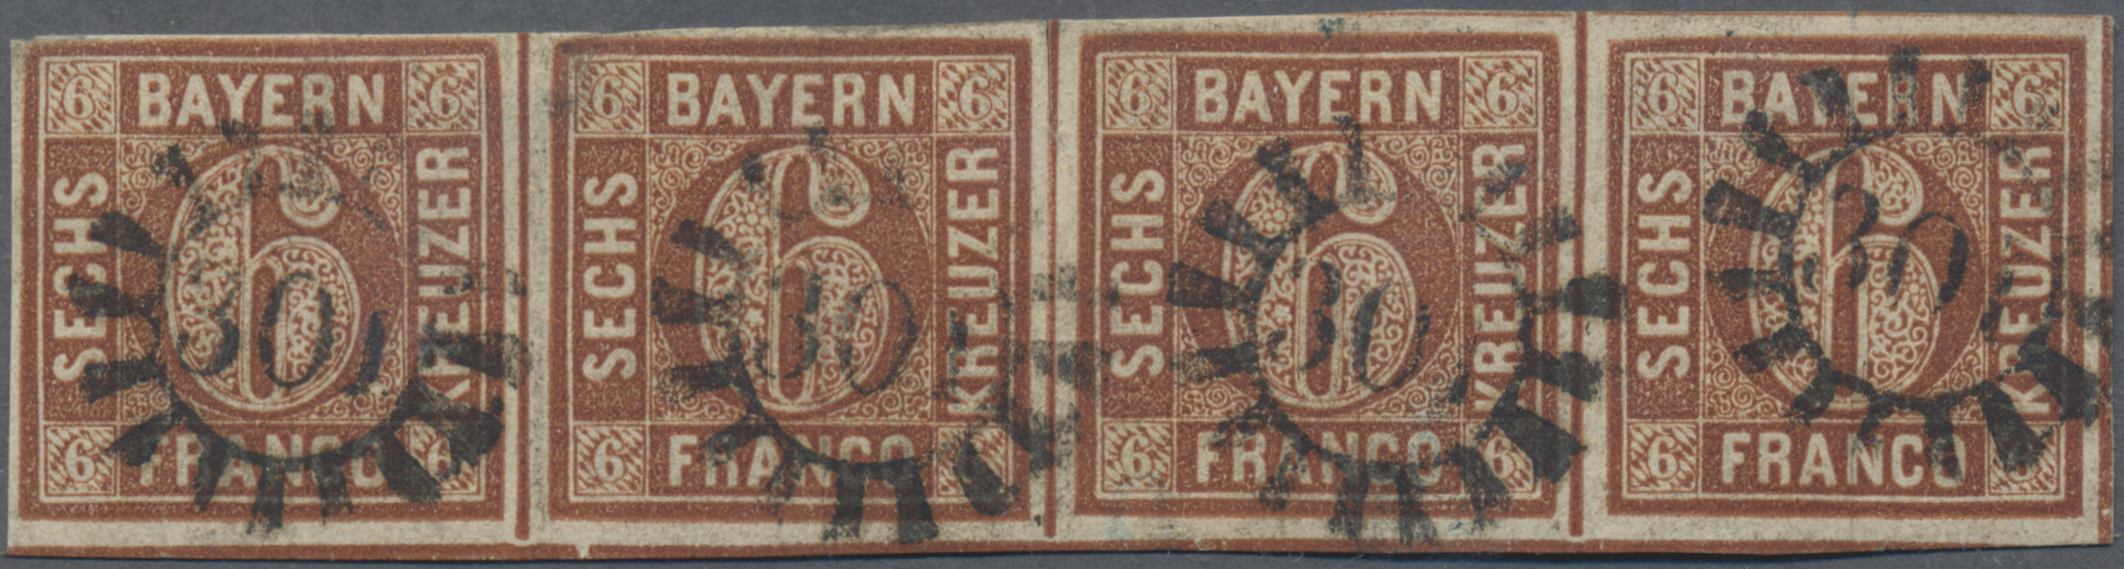 Lot 02143 - Bayern - Marken und Briefe  -  Auktionshaus Christoph Gärtner GmbH & Co. KG 50th Auction Anniversary Auction - Day 7